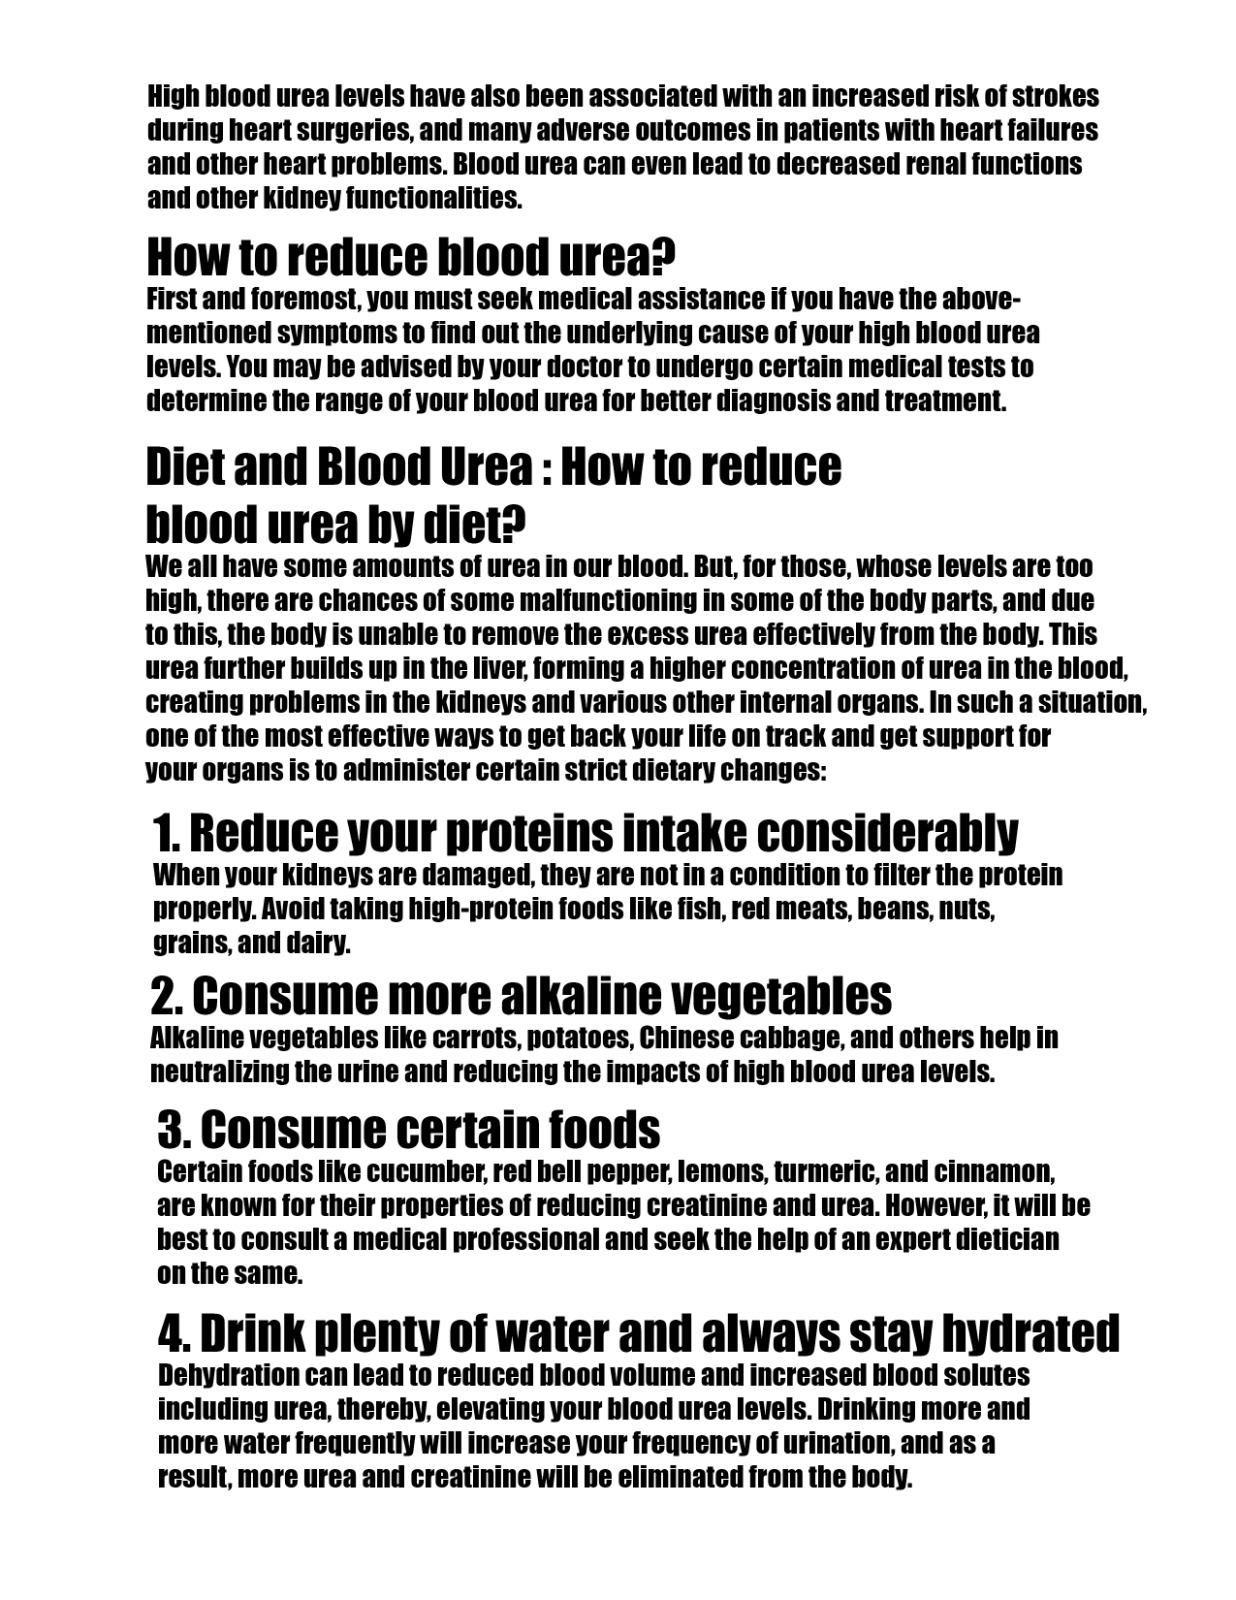 Reduce Blood Urea